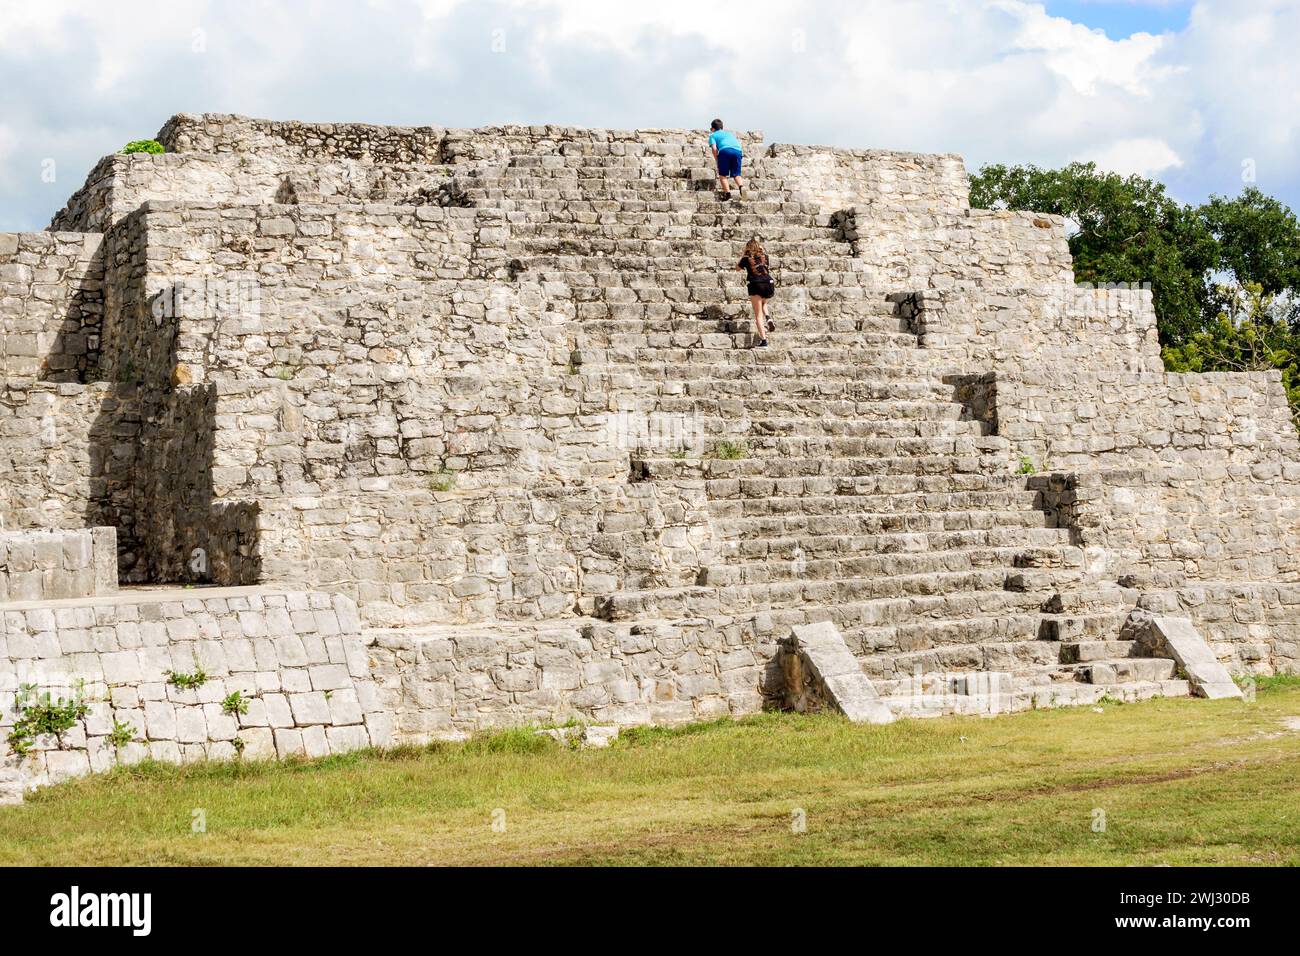 Merida Messico, sito archeologico di Dzibilchaltun Parco Nazionale, rovine della città della civiltà Maya, zona Arqueologica de Dzibilchaltun, struttura 36 roccia Foto Stock